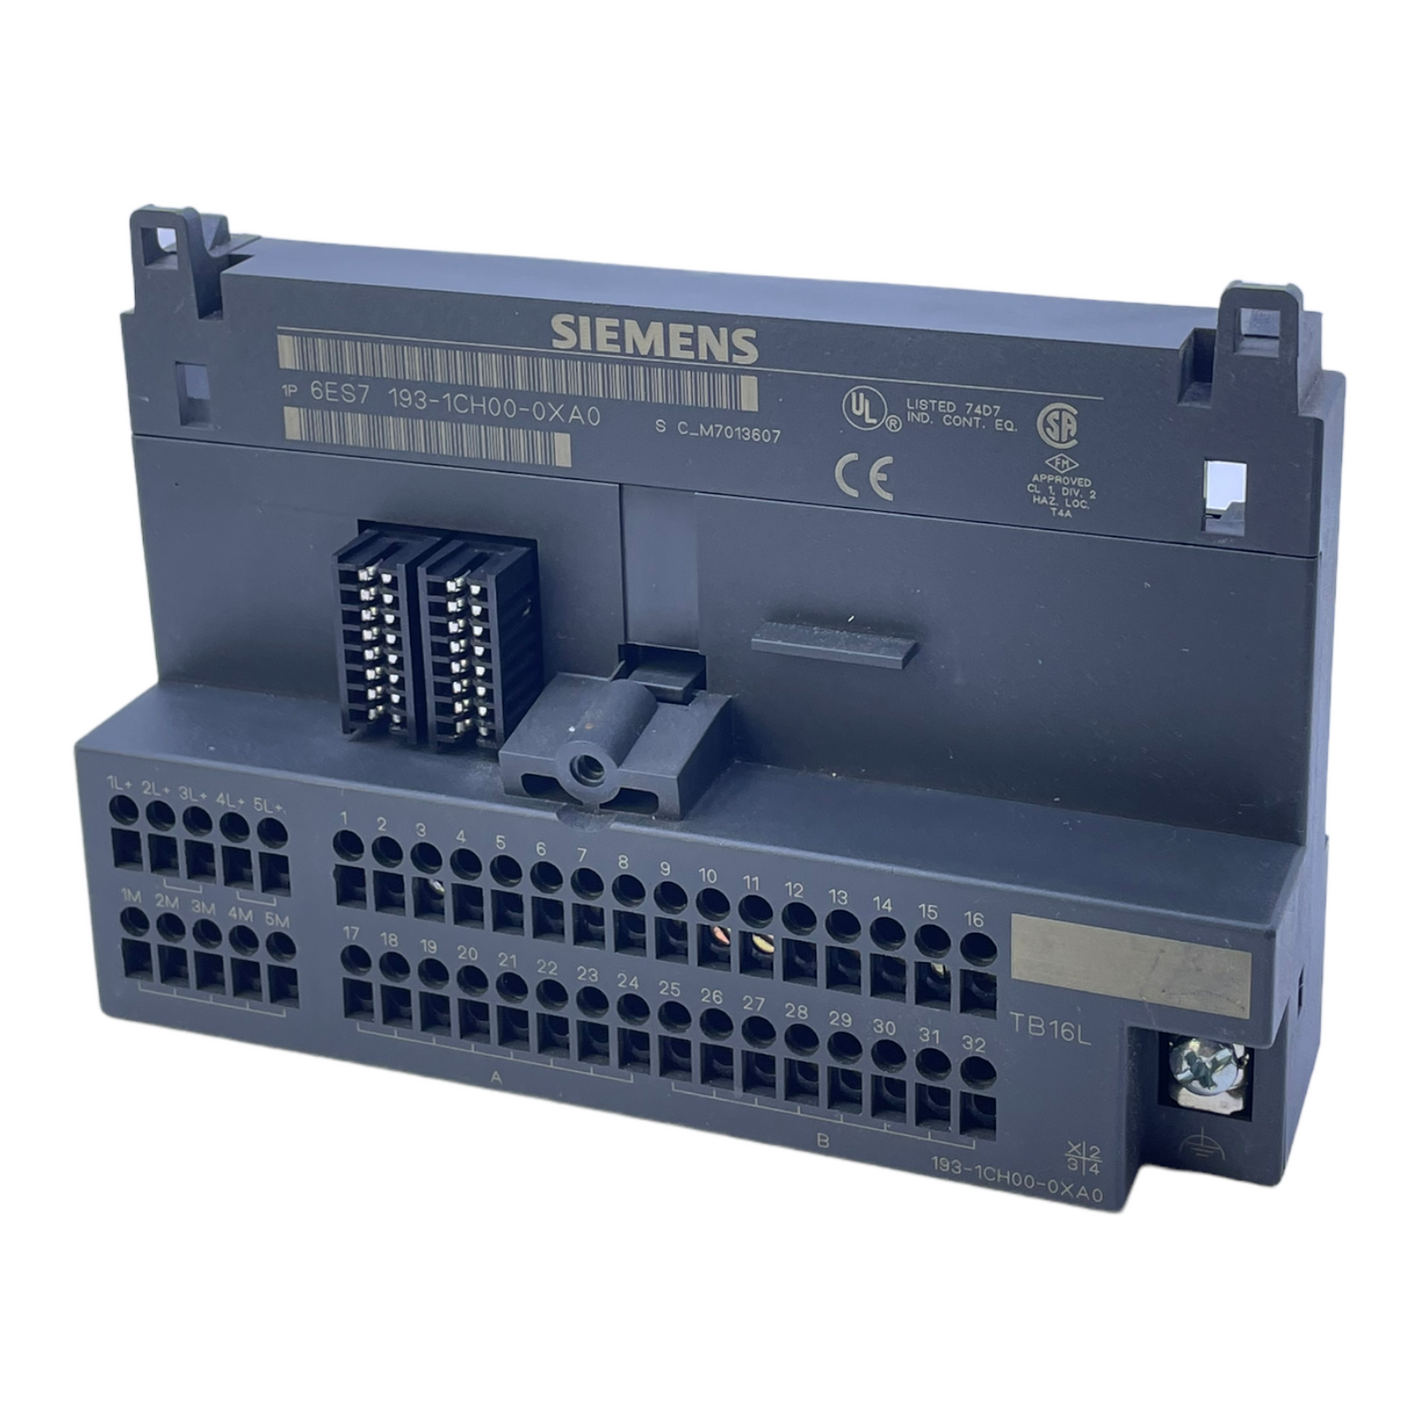 Siemens 6ES7193-1CH00-0XA0 Terminal block TB16L, 16 channels for ET 2 terminal block